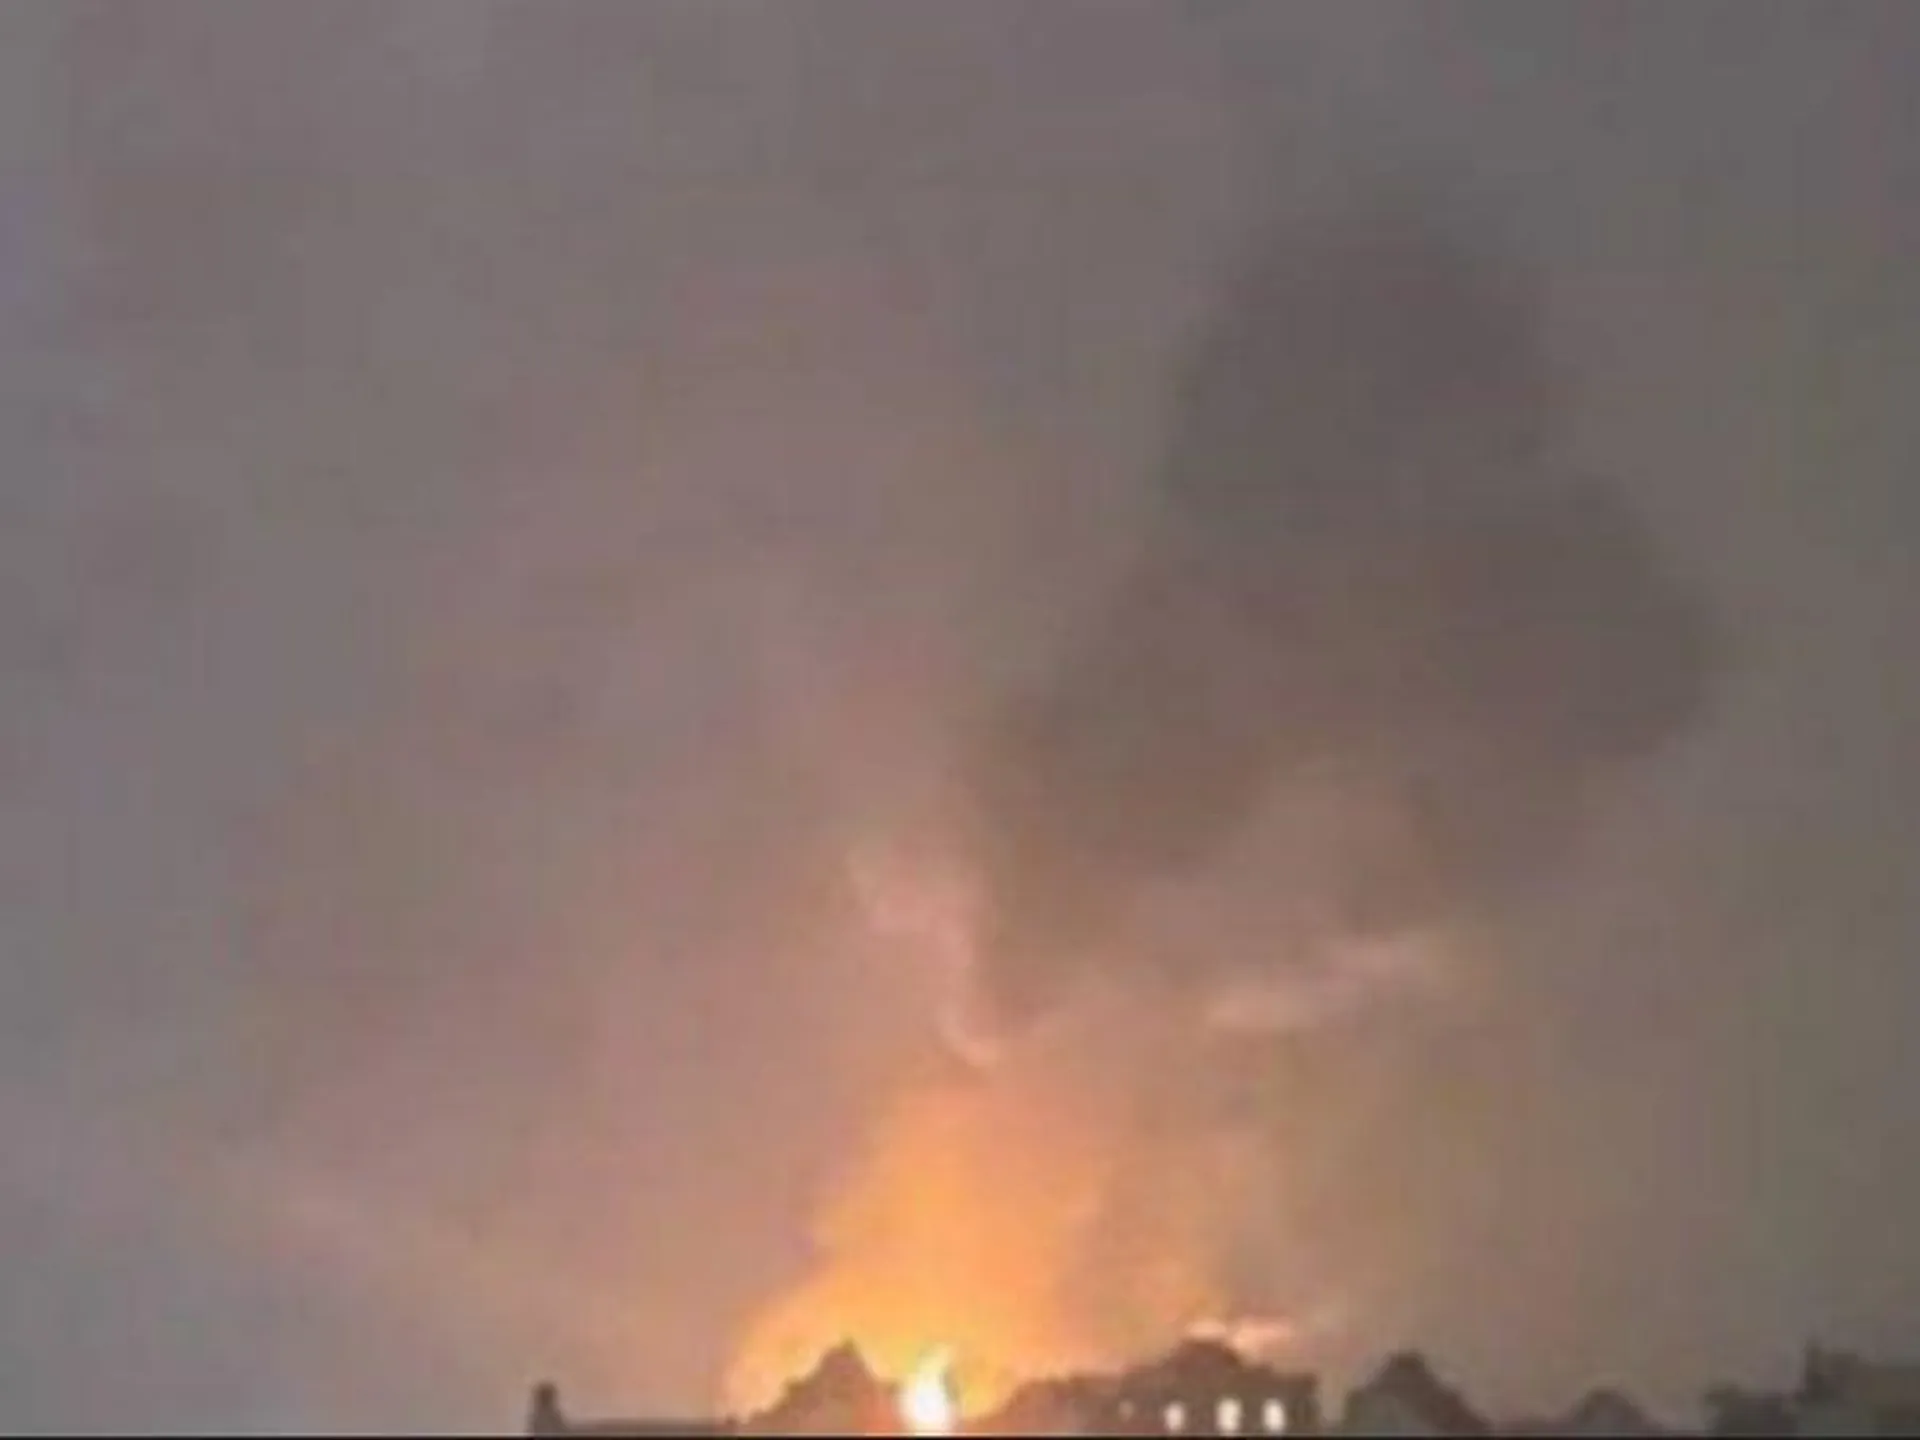 Shot передает о взрывах в районе нефтебазы под Смоленском, видно сильное зарево и дым